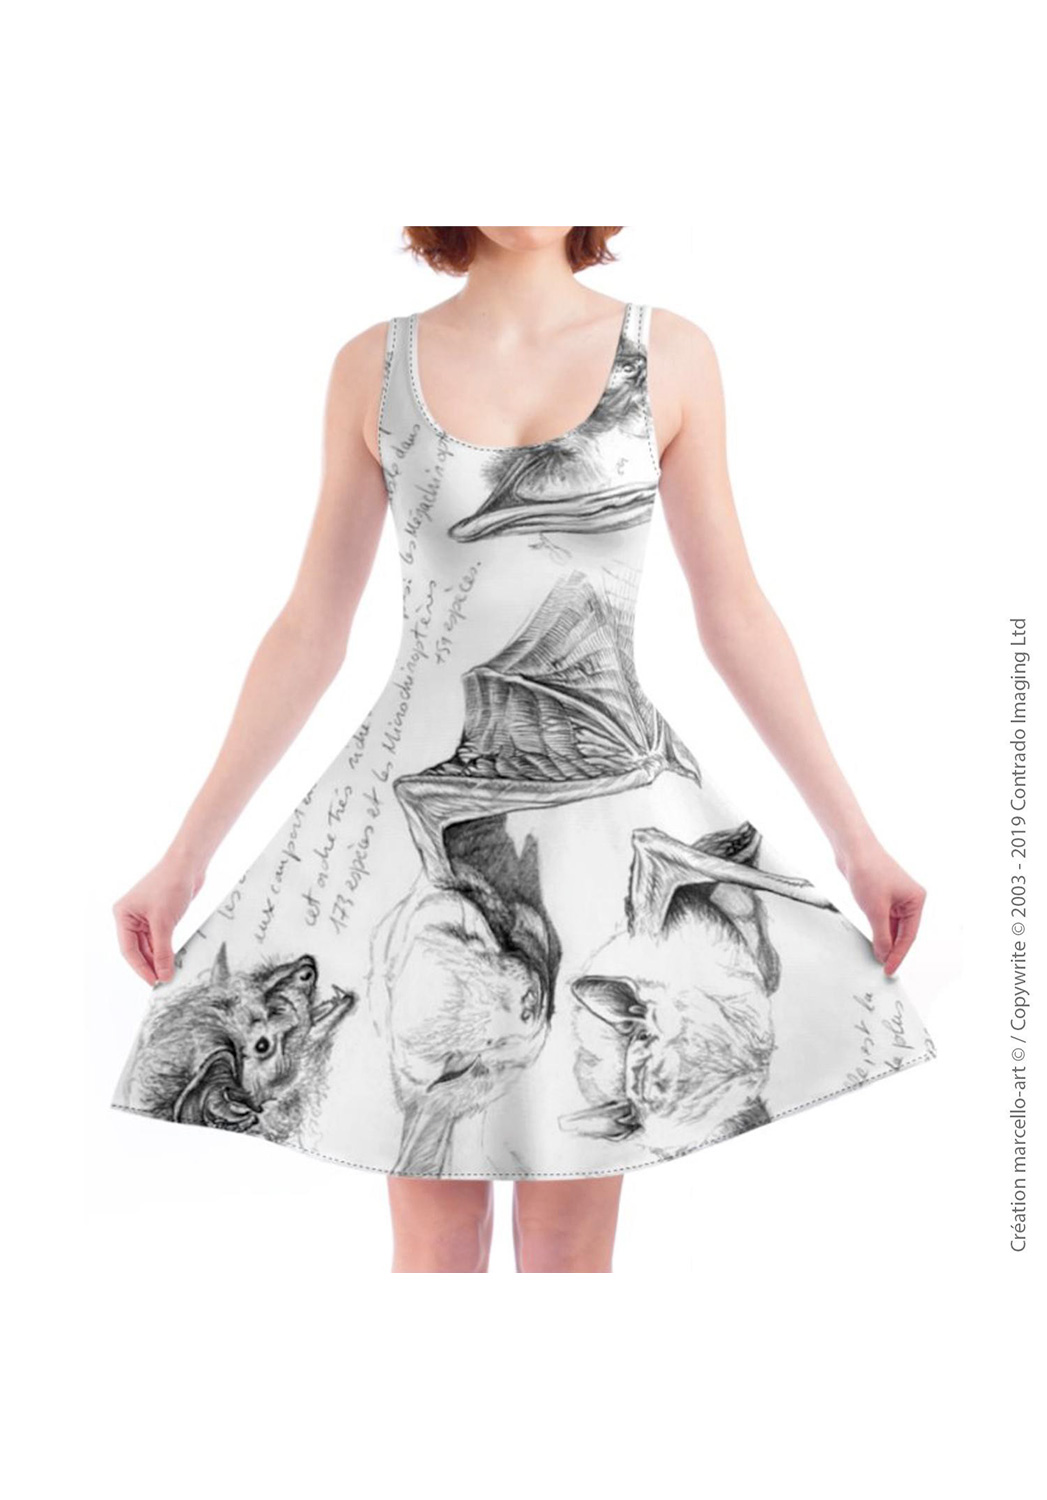 Marcello-art: Dresses Skater dress 31 Pipistrelle - white